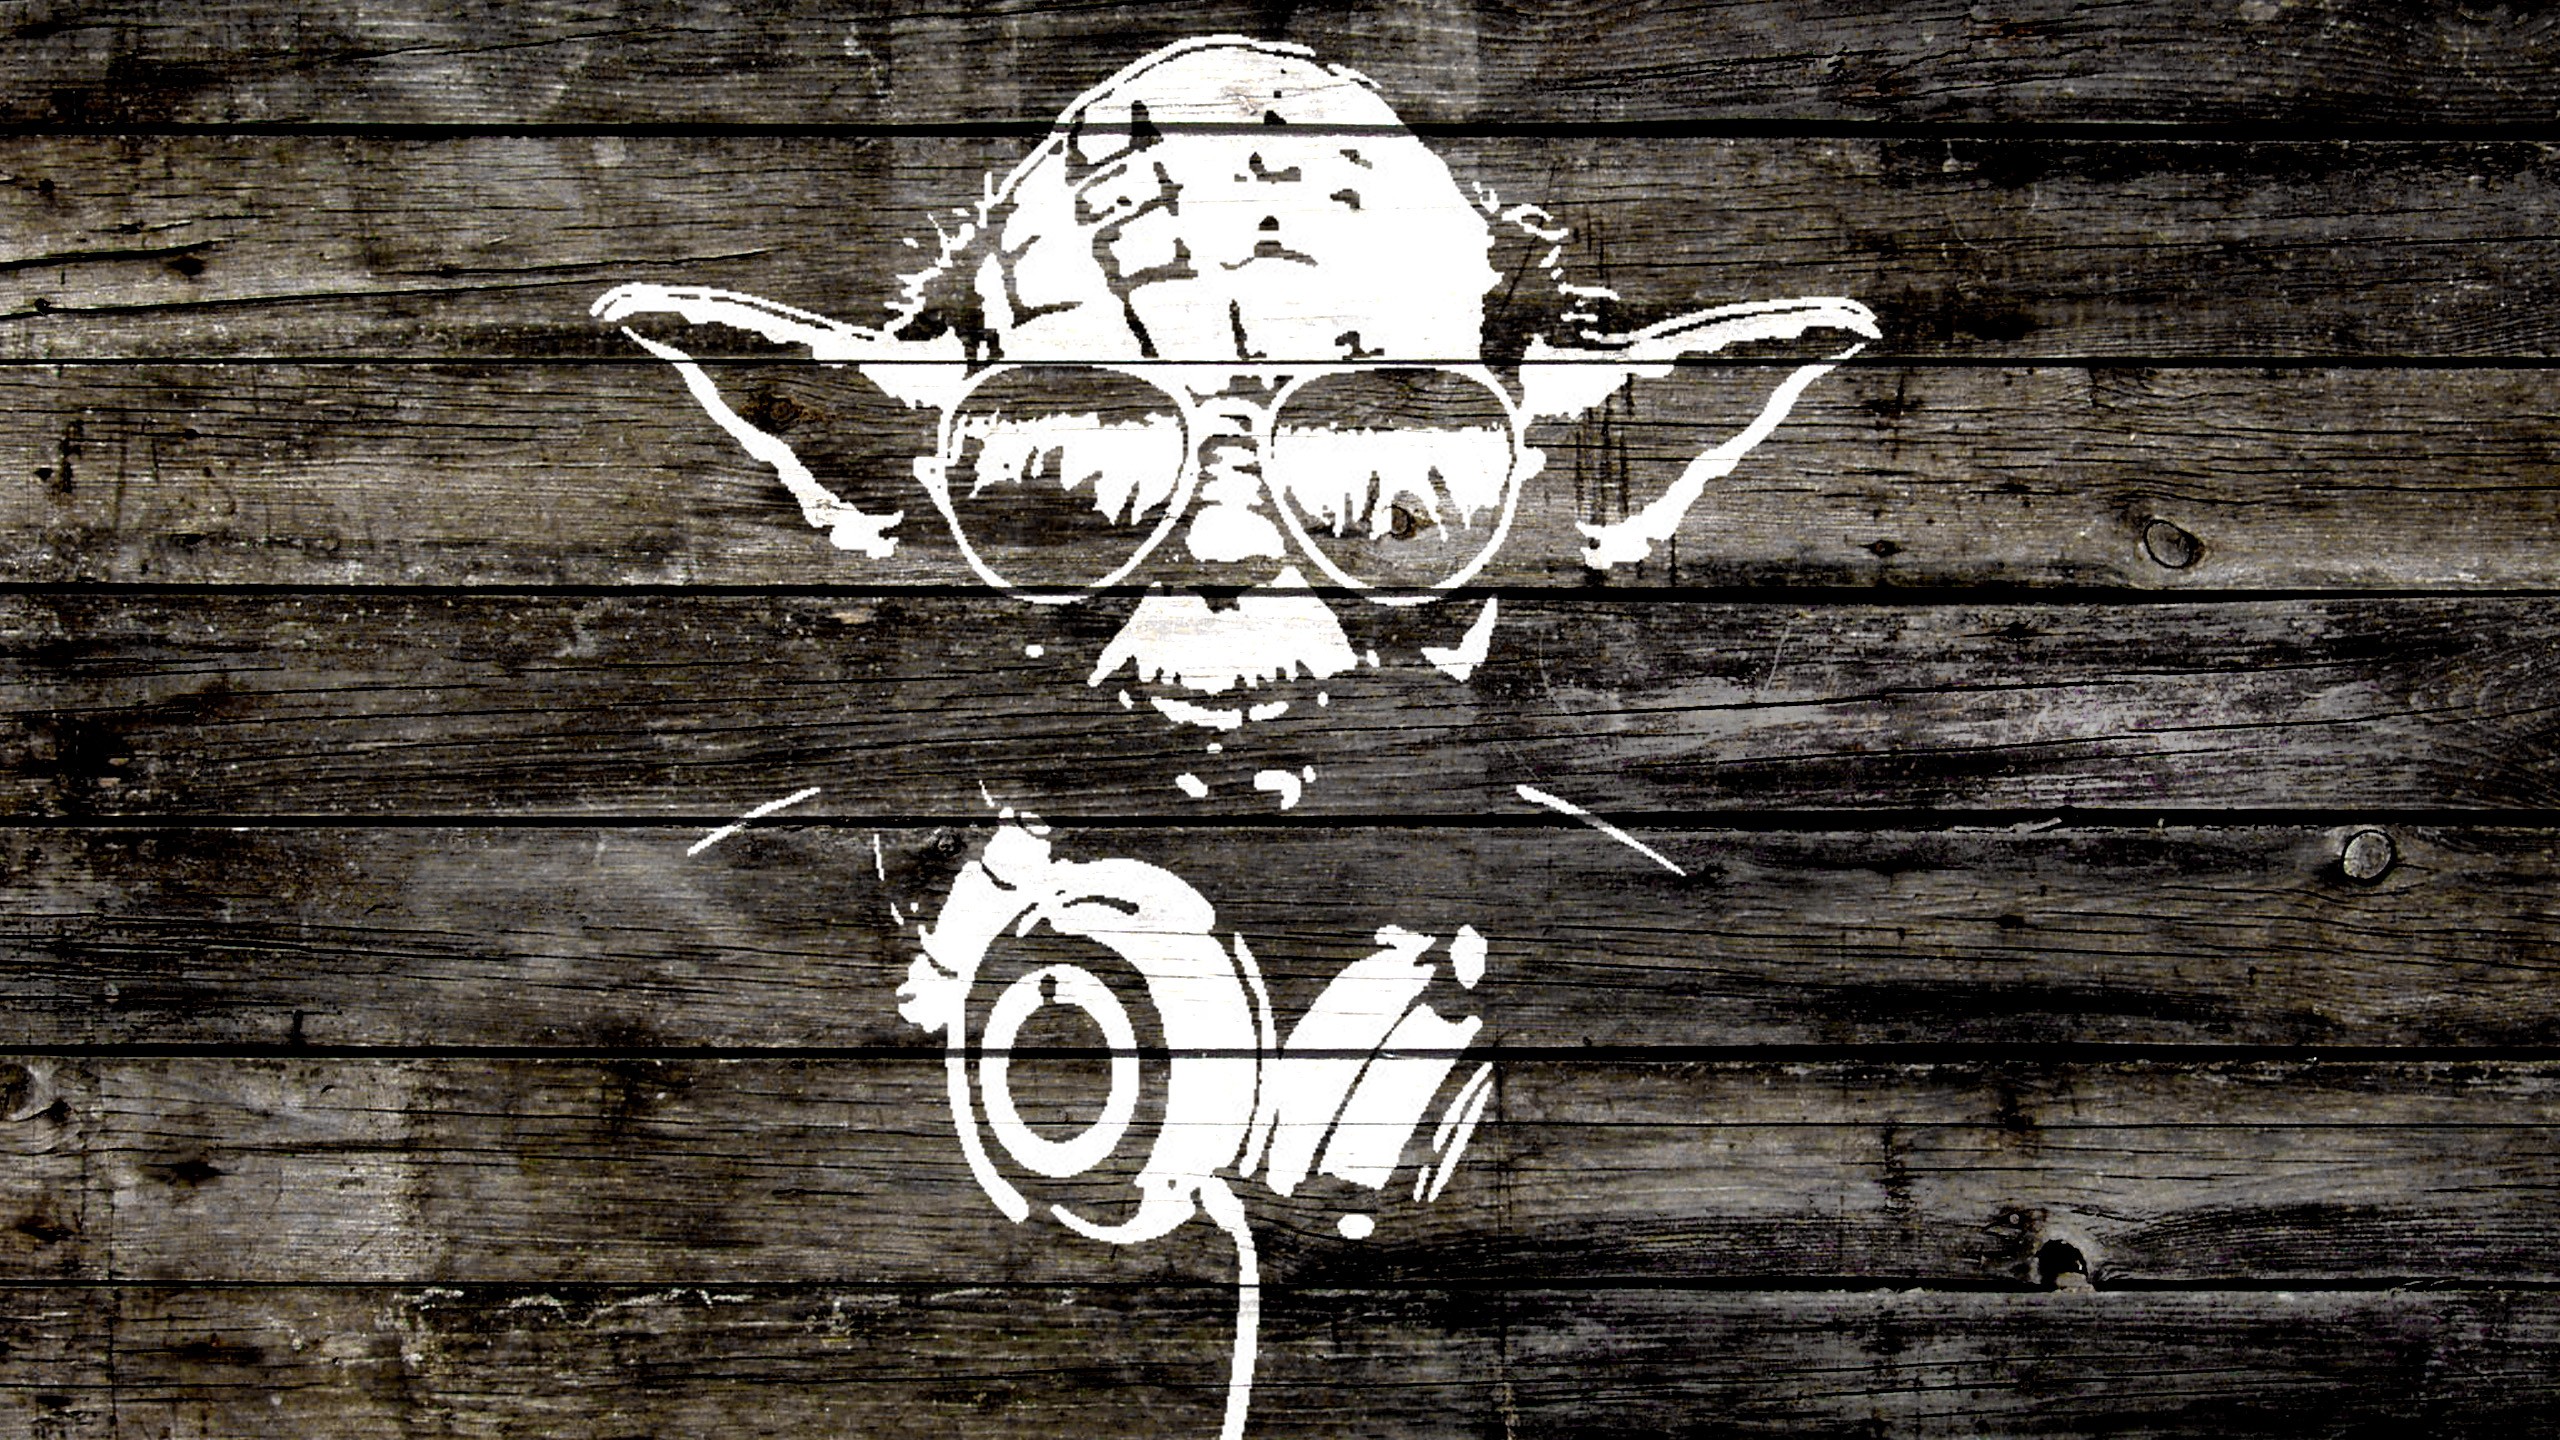 Download the Yoda Headphones Wallpaper Yoda Headphones